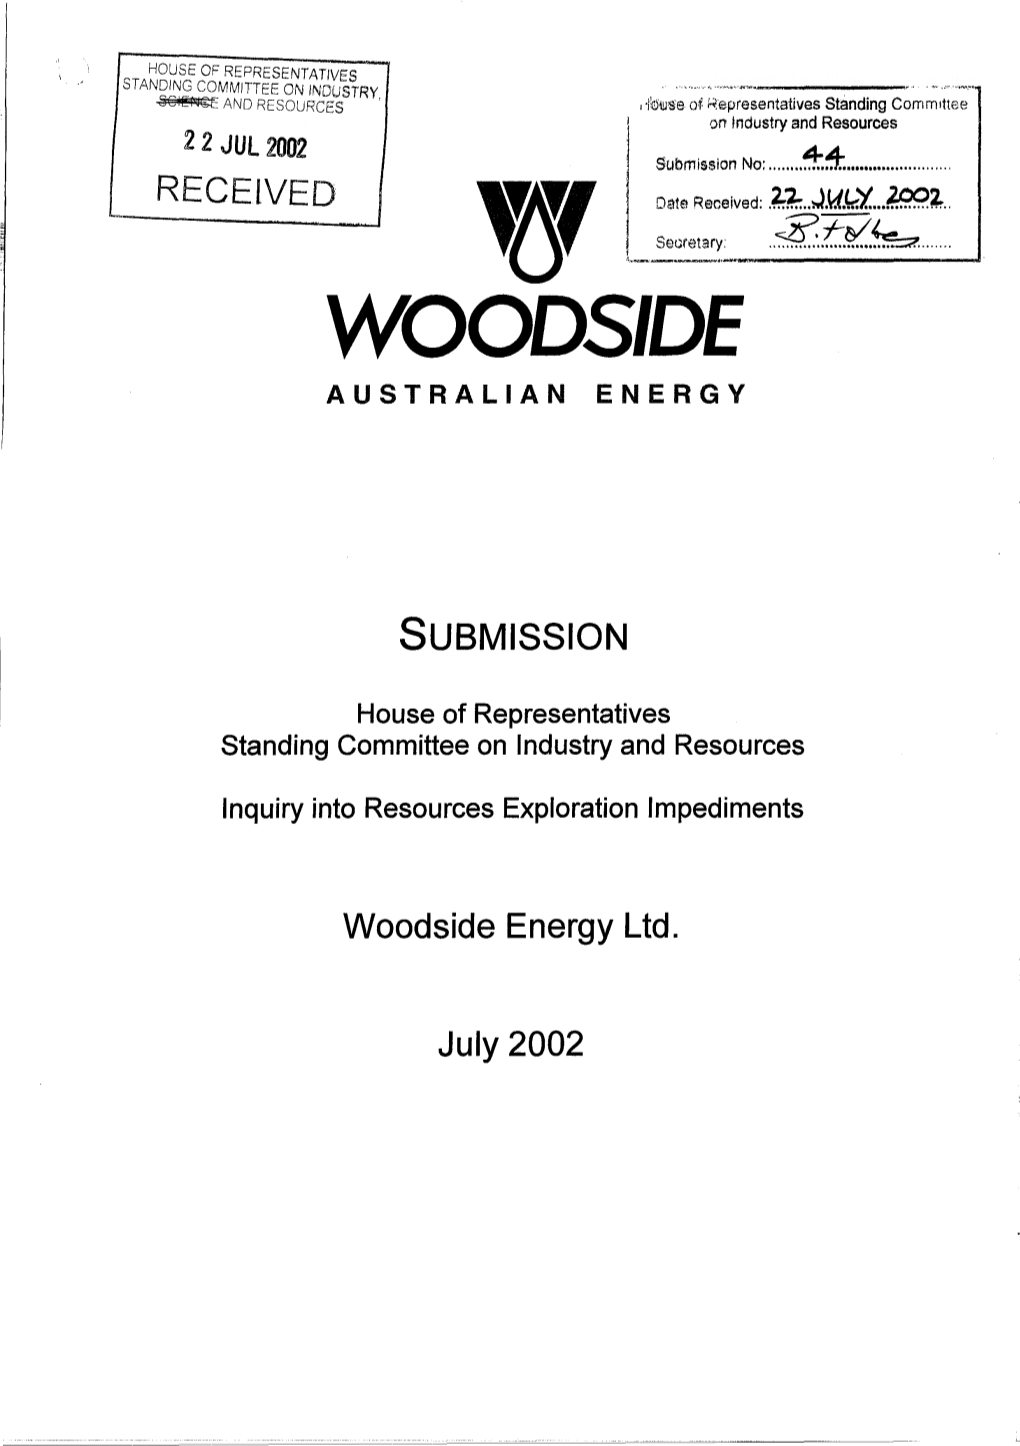 W000side Australian Energy